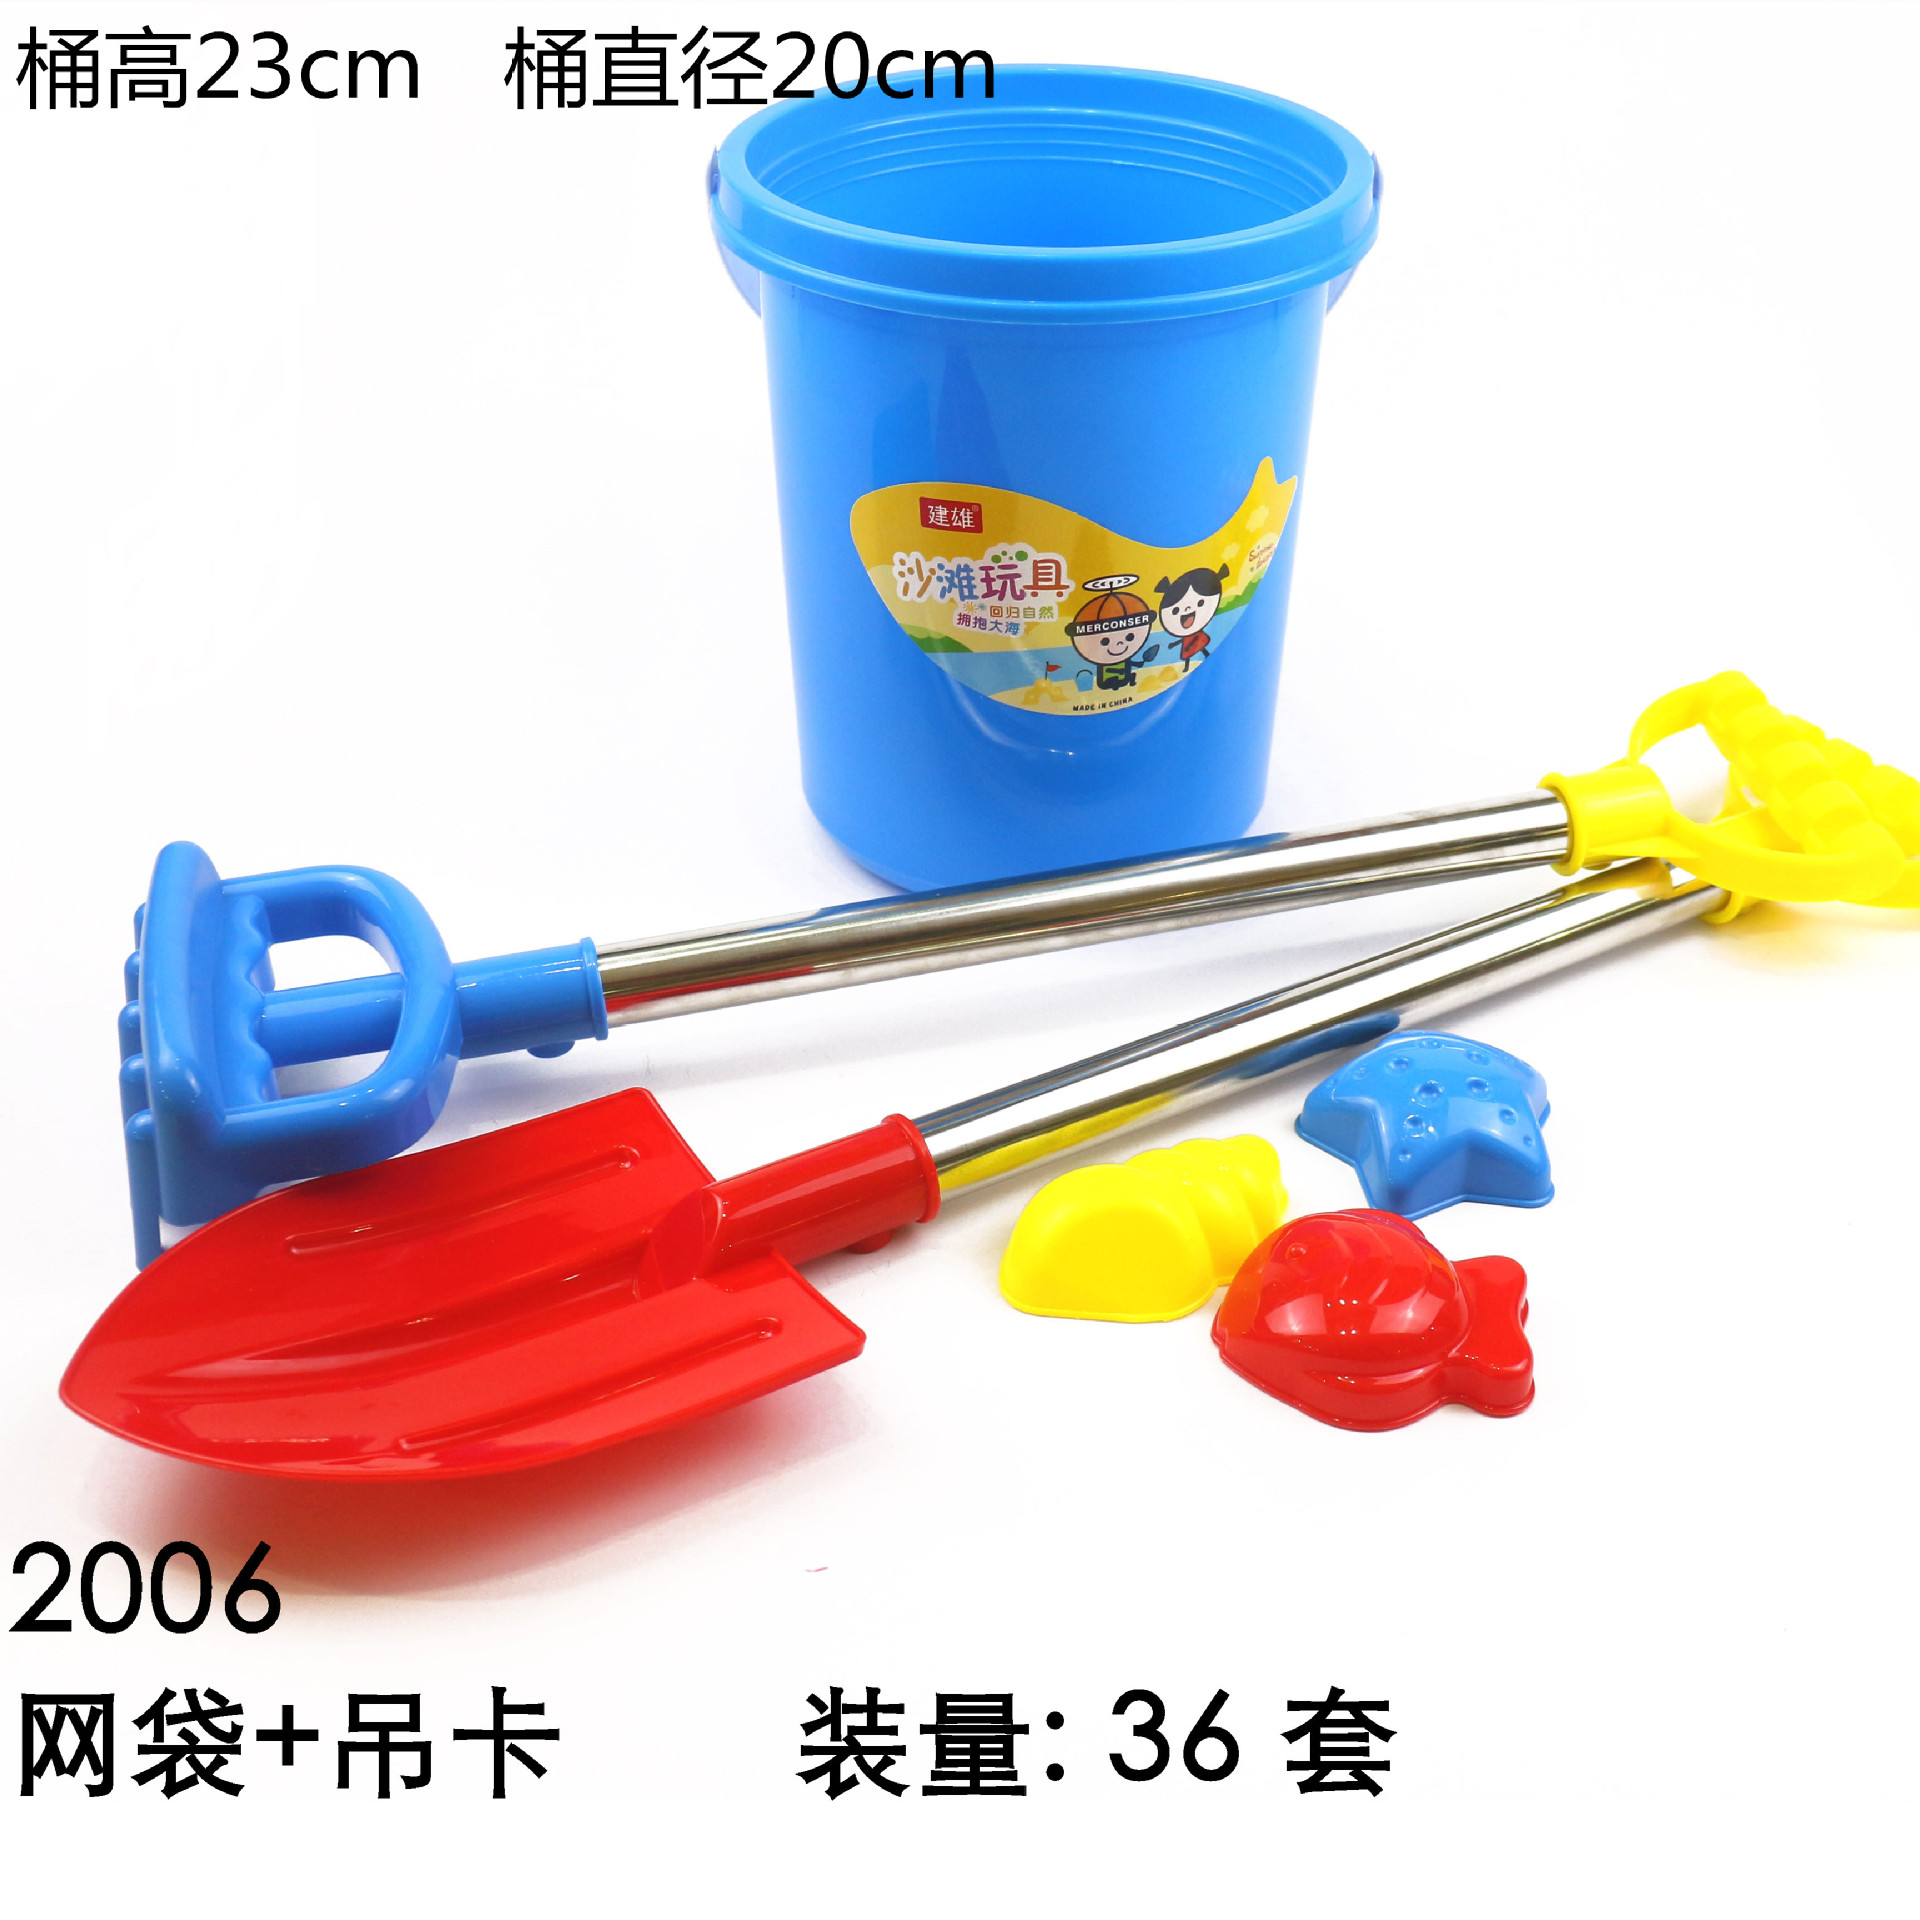 SuSenGo 9 件沙子玩具套装沙滩玩具鲨鱼桶带沙子过滤器,适合儿童户外玩耍 - 玩具 - 亚马逊中国